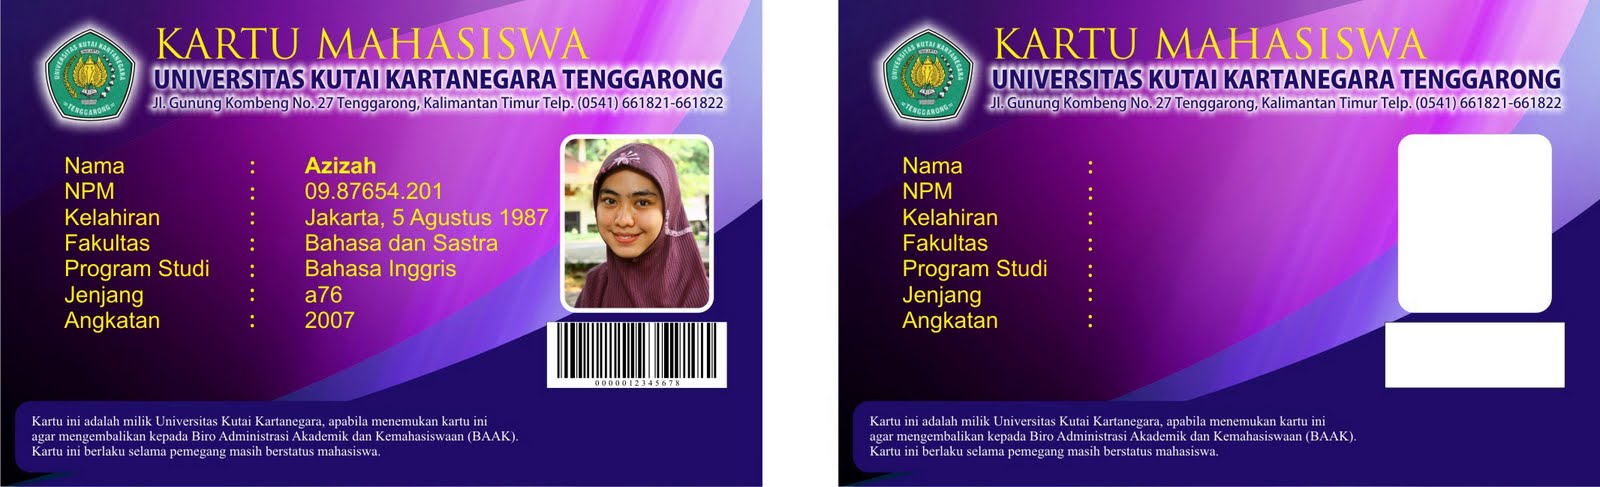 Download image Mahasiswa Desain Kartu Pegawai Name Card Id PC, Android ...